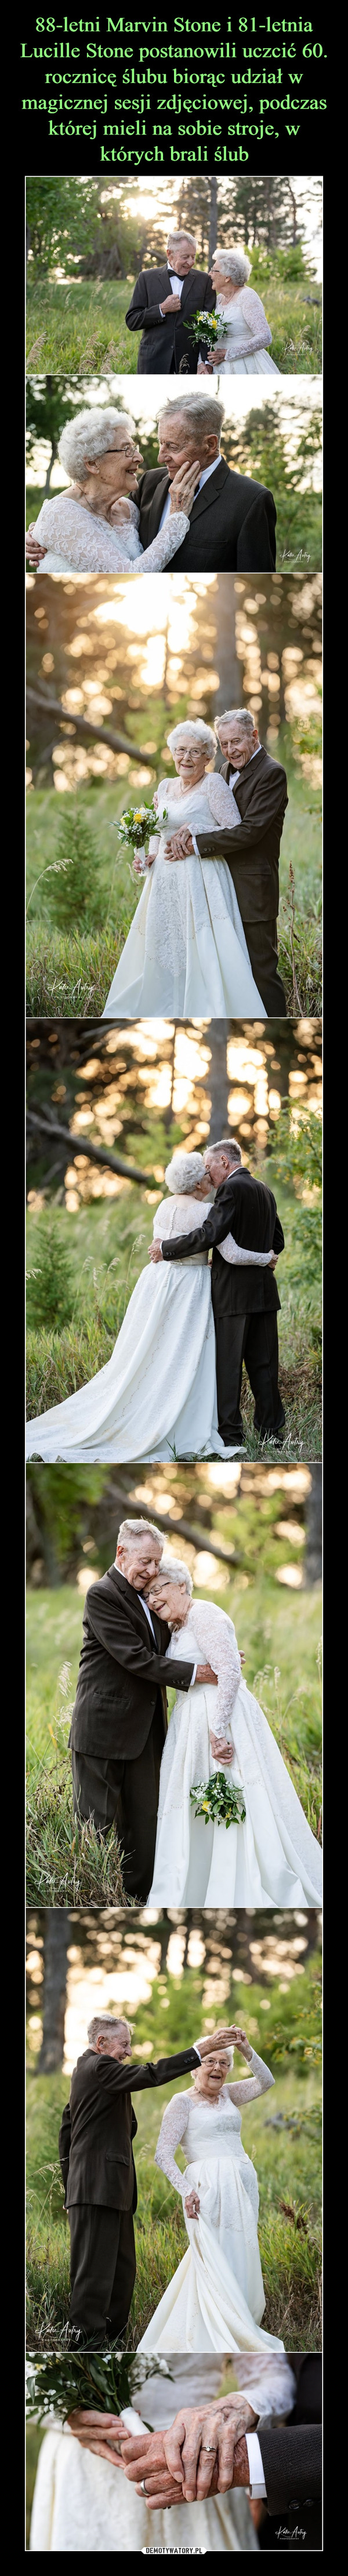 88-letni Marvin Stone i 81-letnia Lucille Stone postanowili uczcić 60. rocznicę ślubu biorąc udział w magicznej sesji zdjęciowej, podczas której mieli na sobie stroje, w których brali ślub